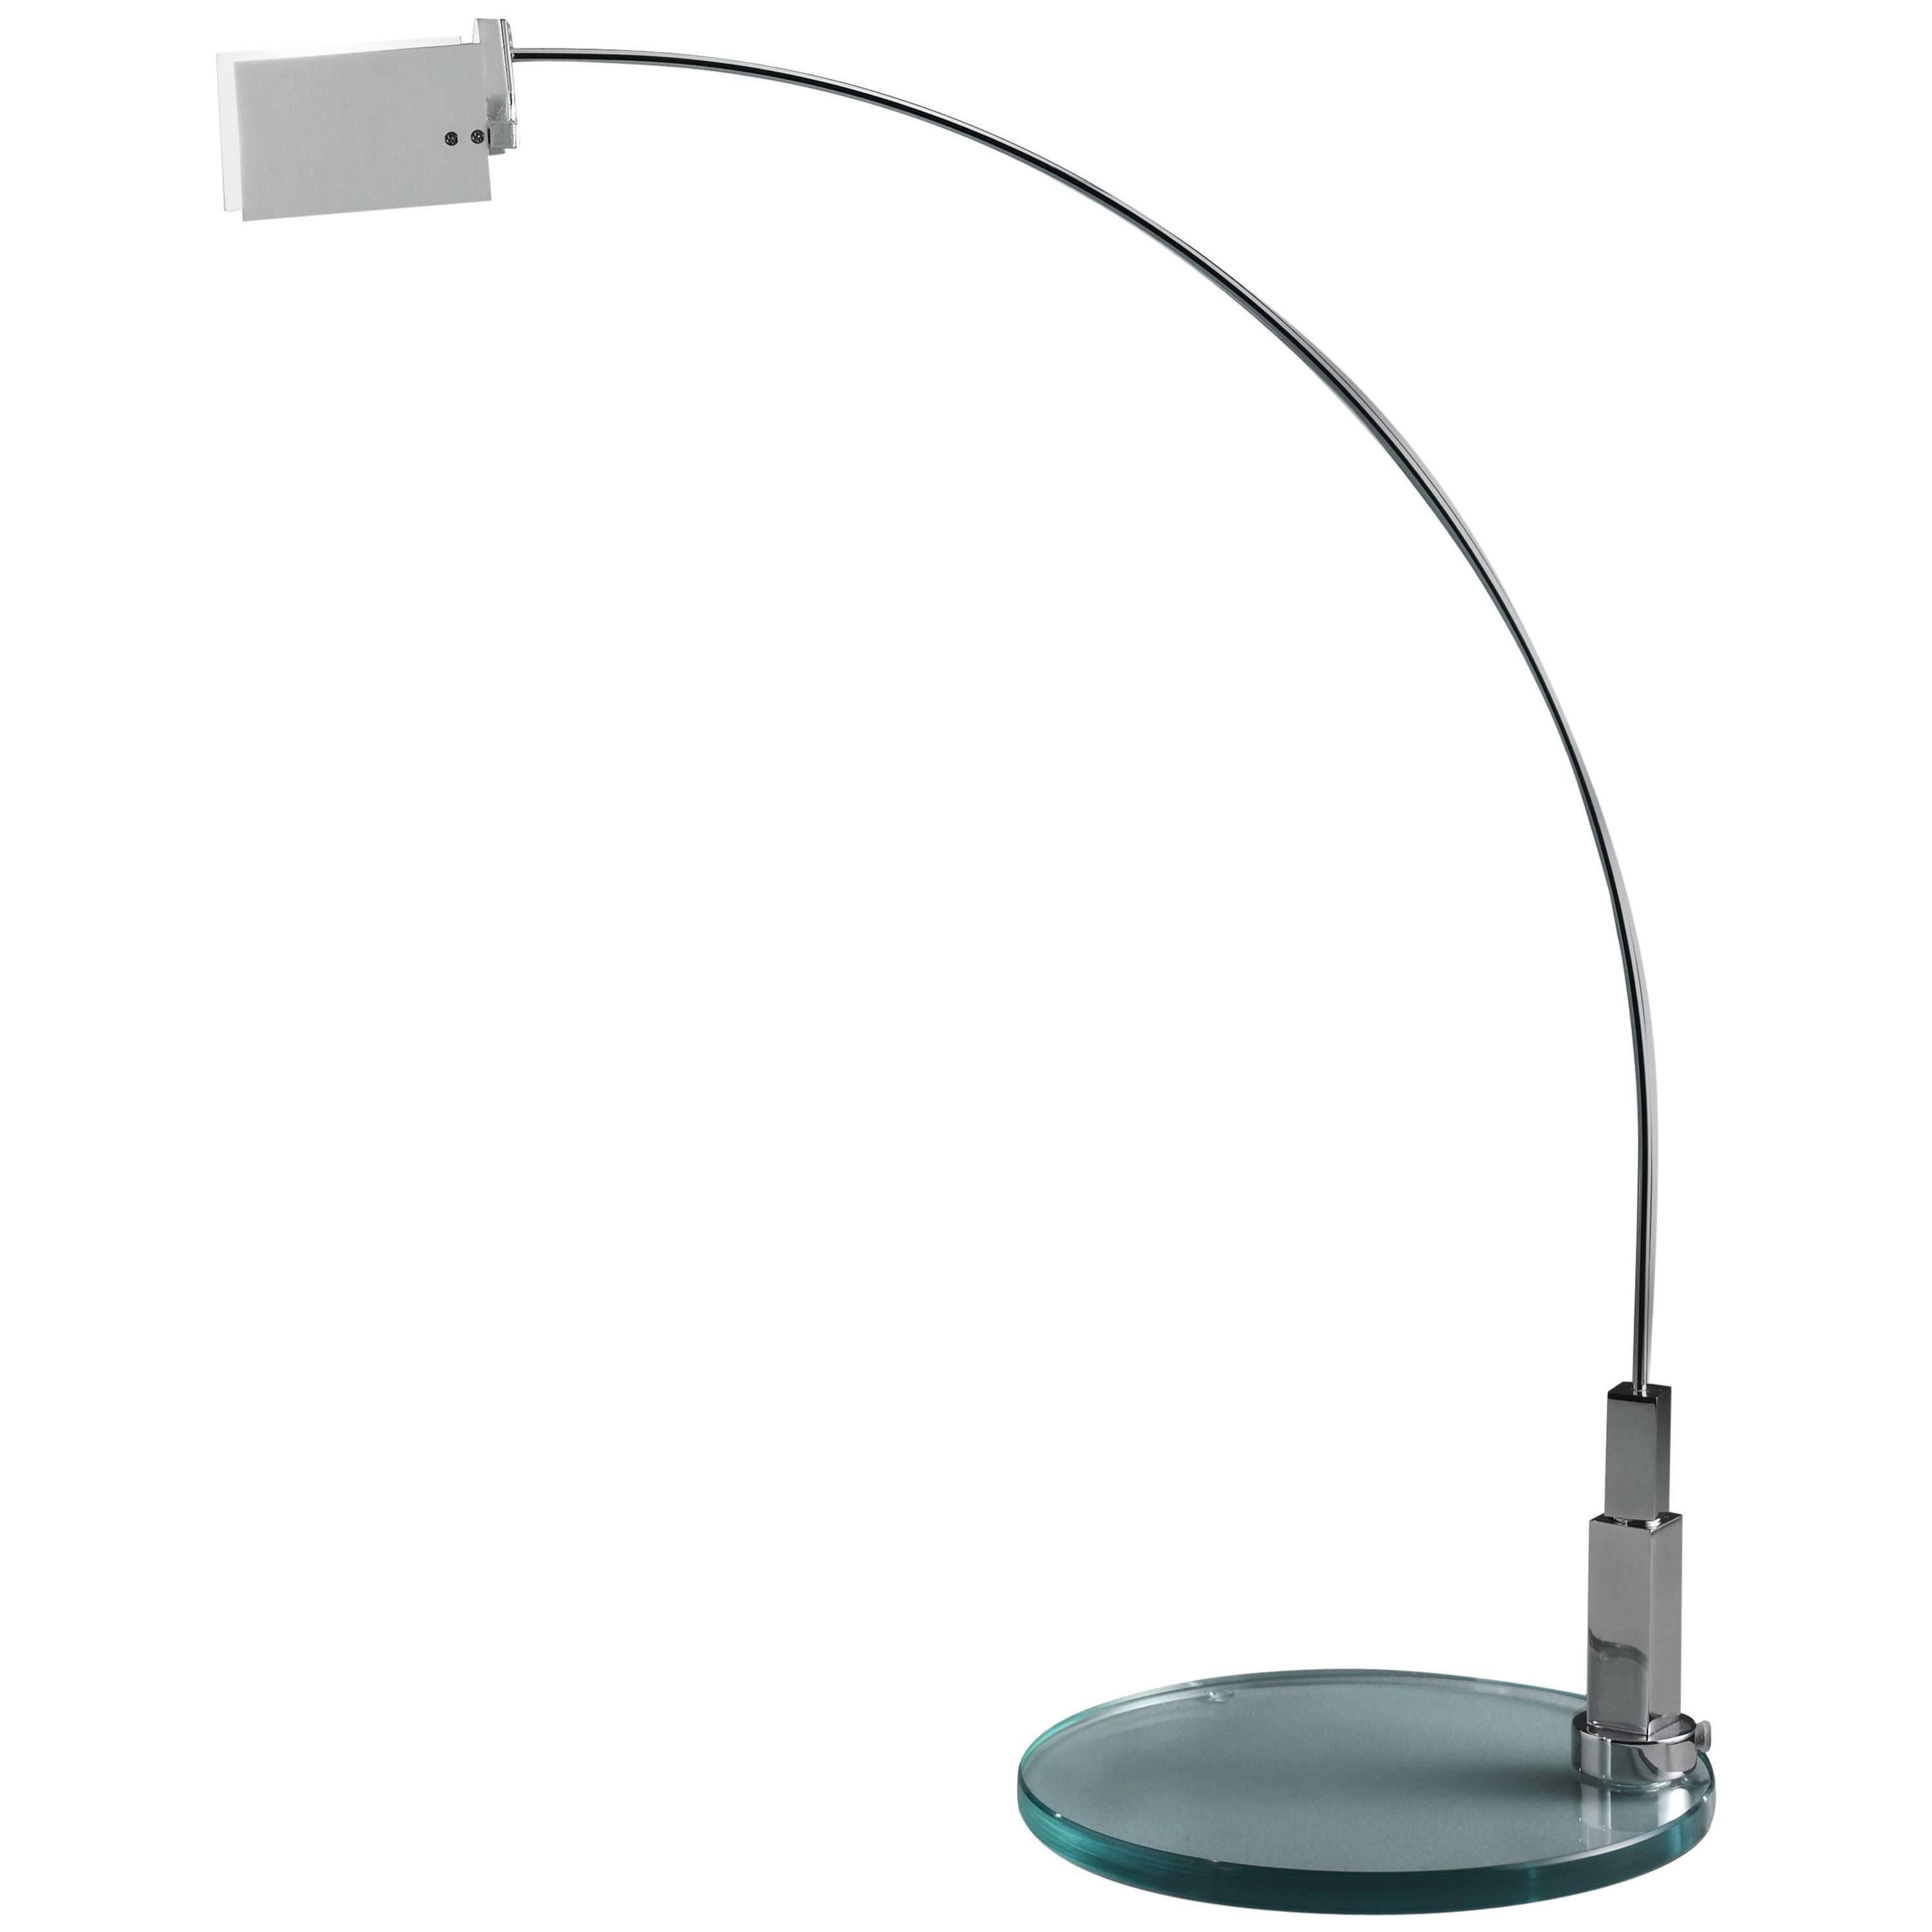 Alvaro Siza Fontana Arte Falena Table Lamp in Chromed Metal, Designed in 1994